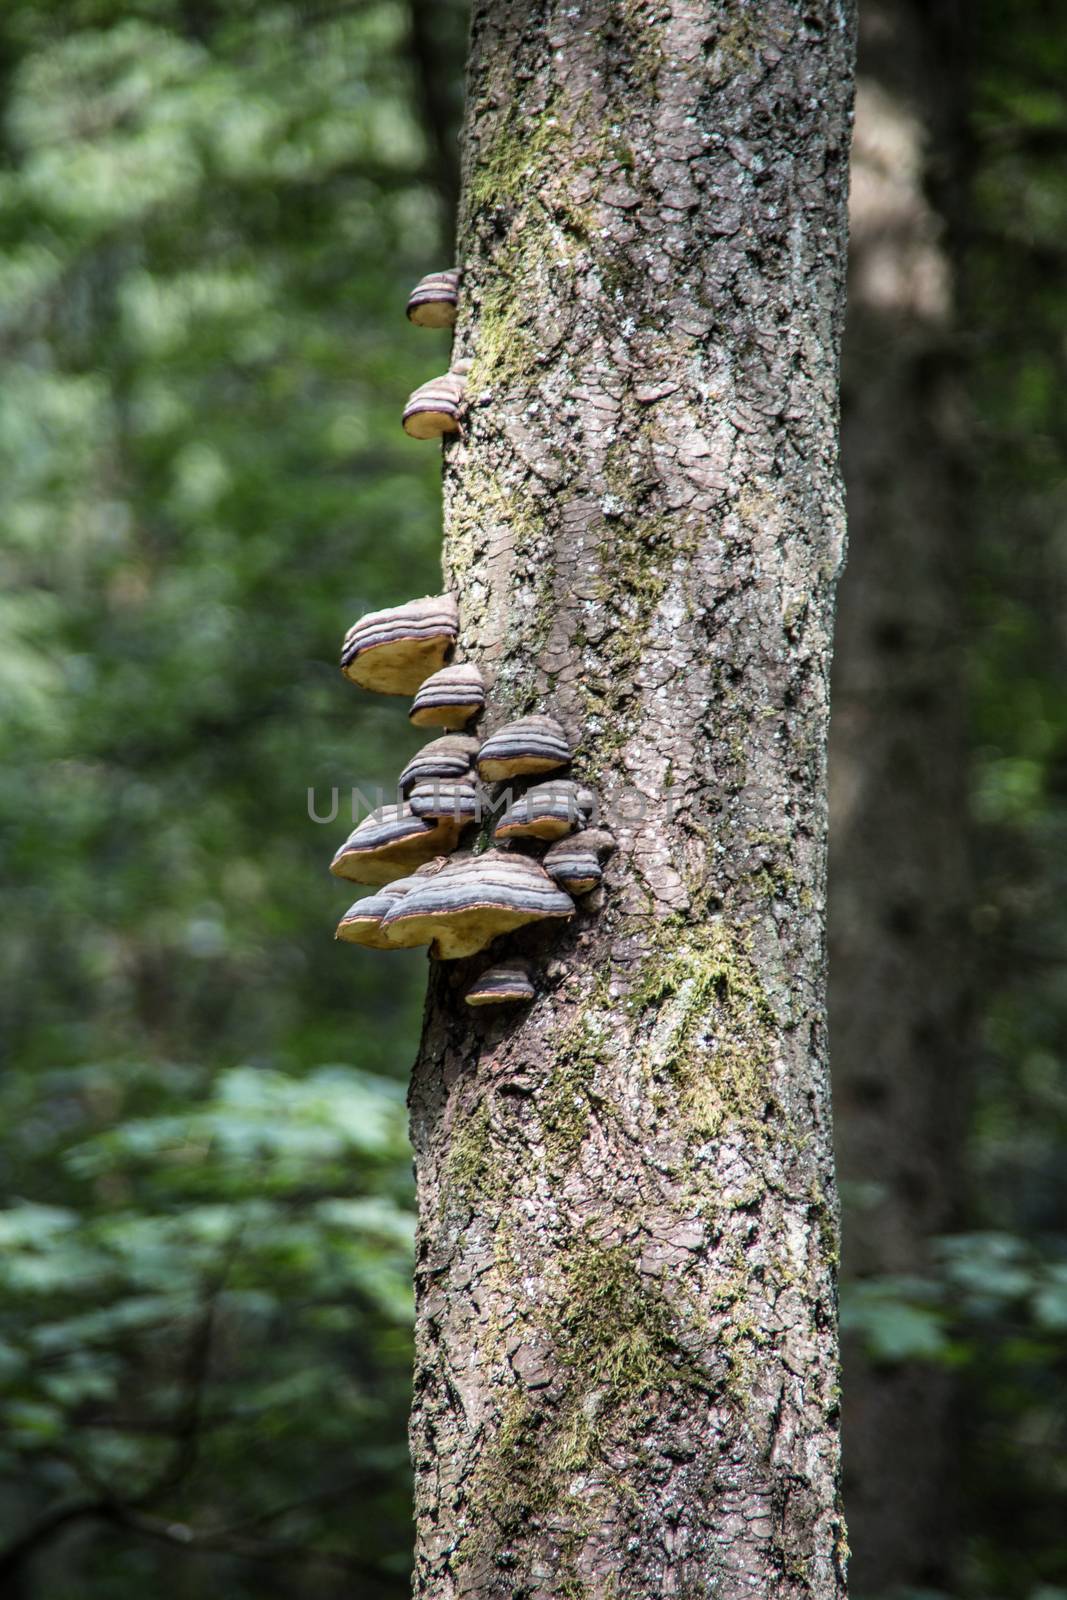 Tree trunk with parasitic tree fungi